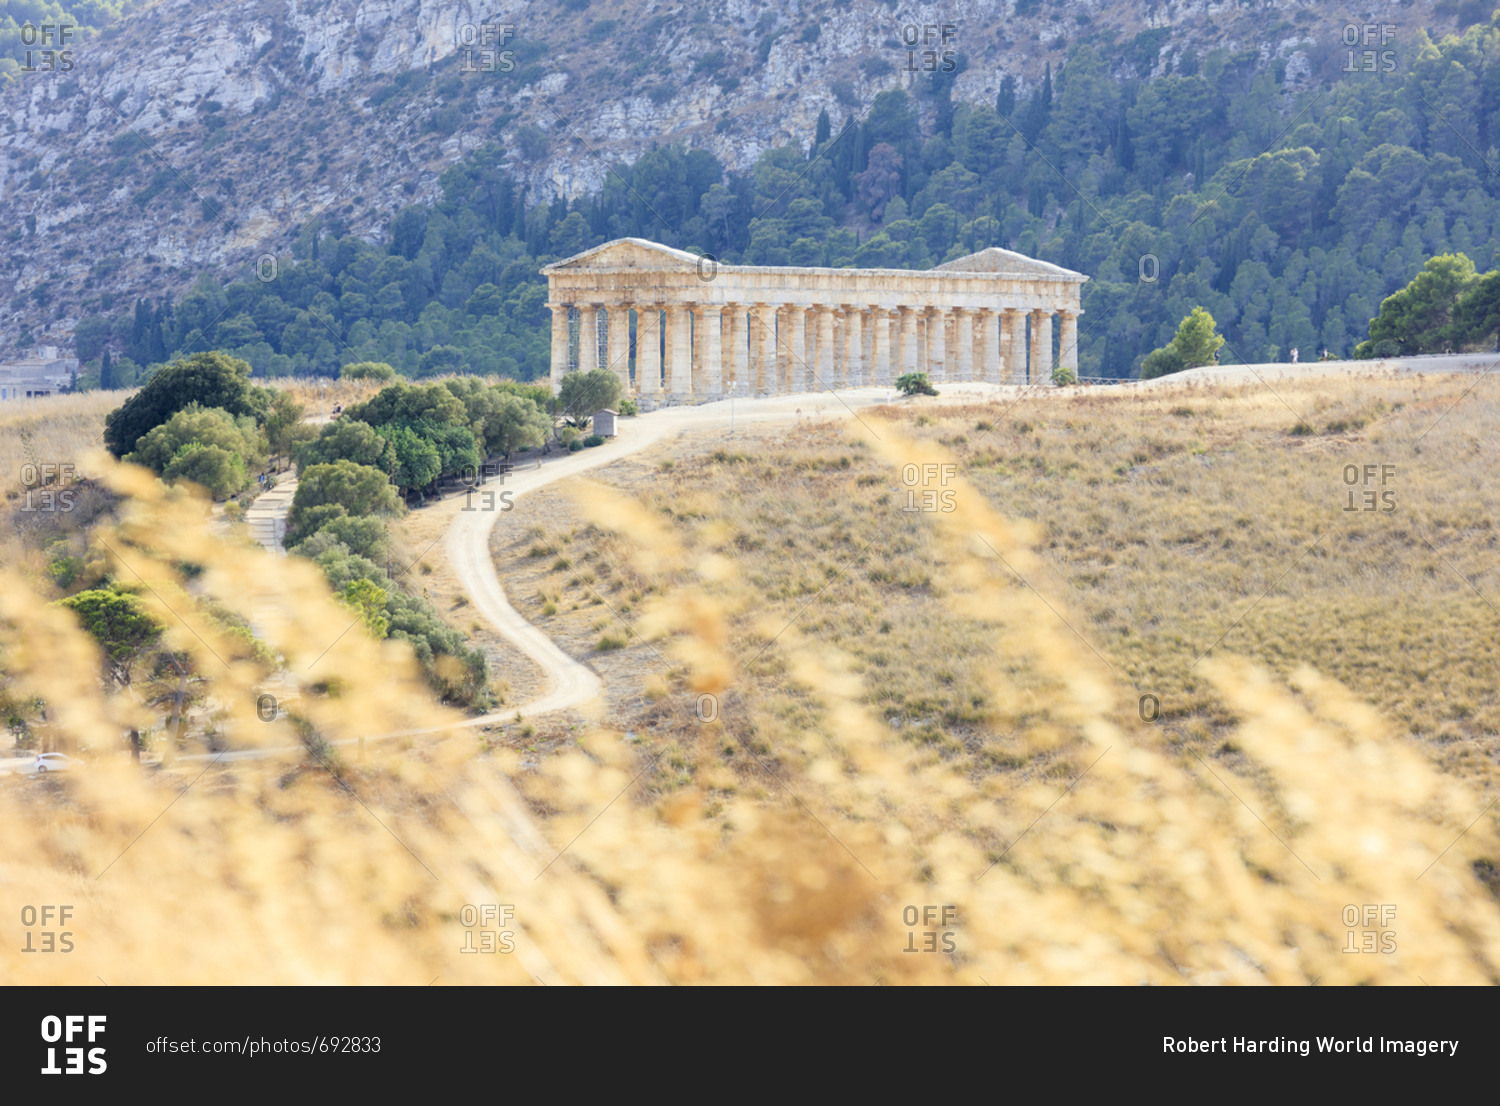 Temple of Segesta, Calatafimi, province of Trapani, Sicily, Italy, Europe